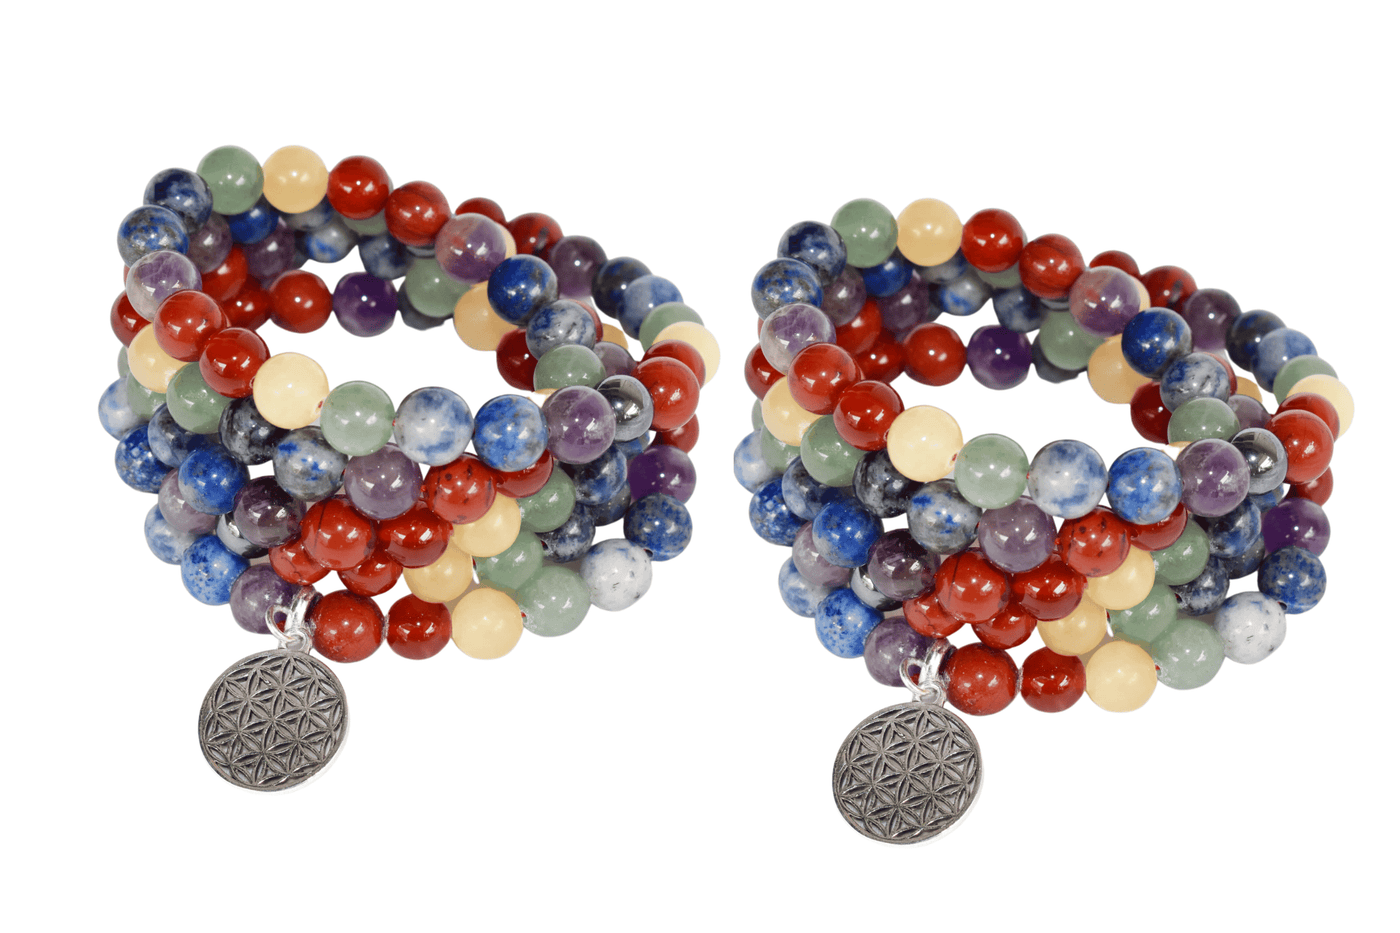 7 Chakra Beads Mala Bracelet, 108 Prayer Beads Necklace